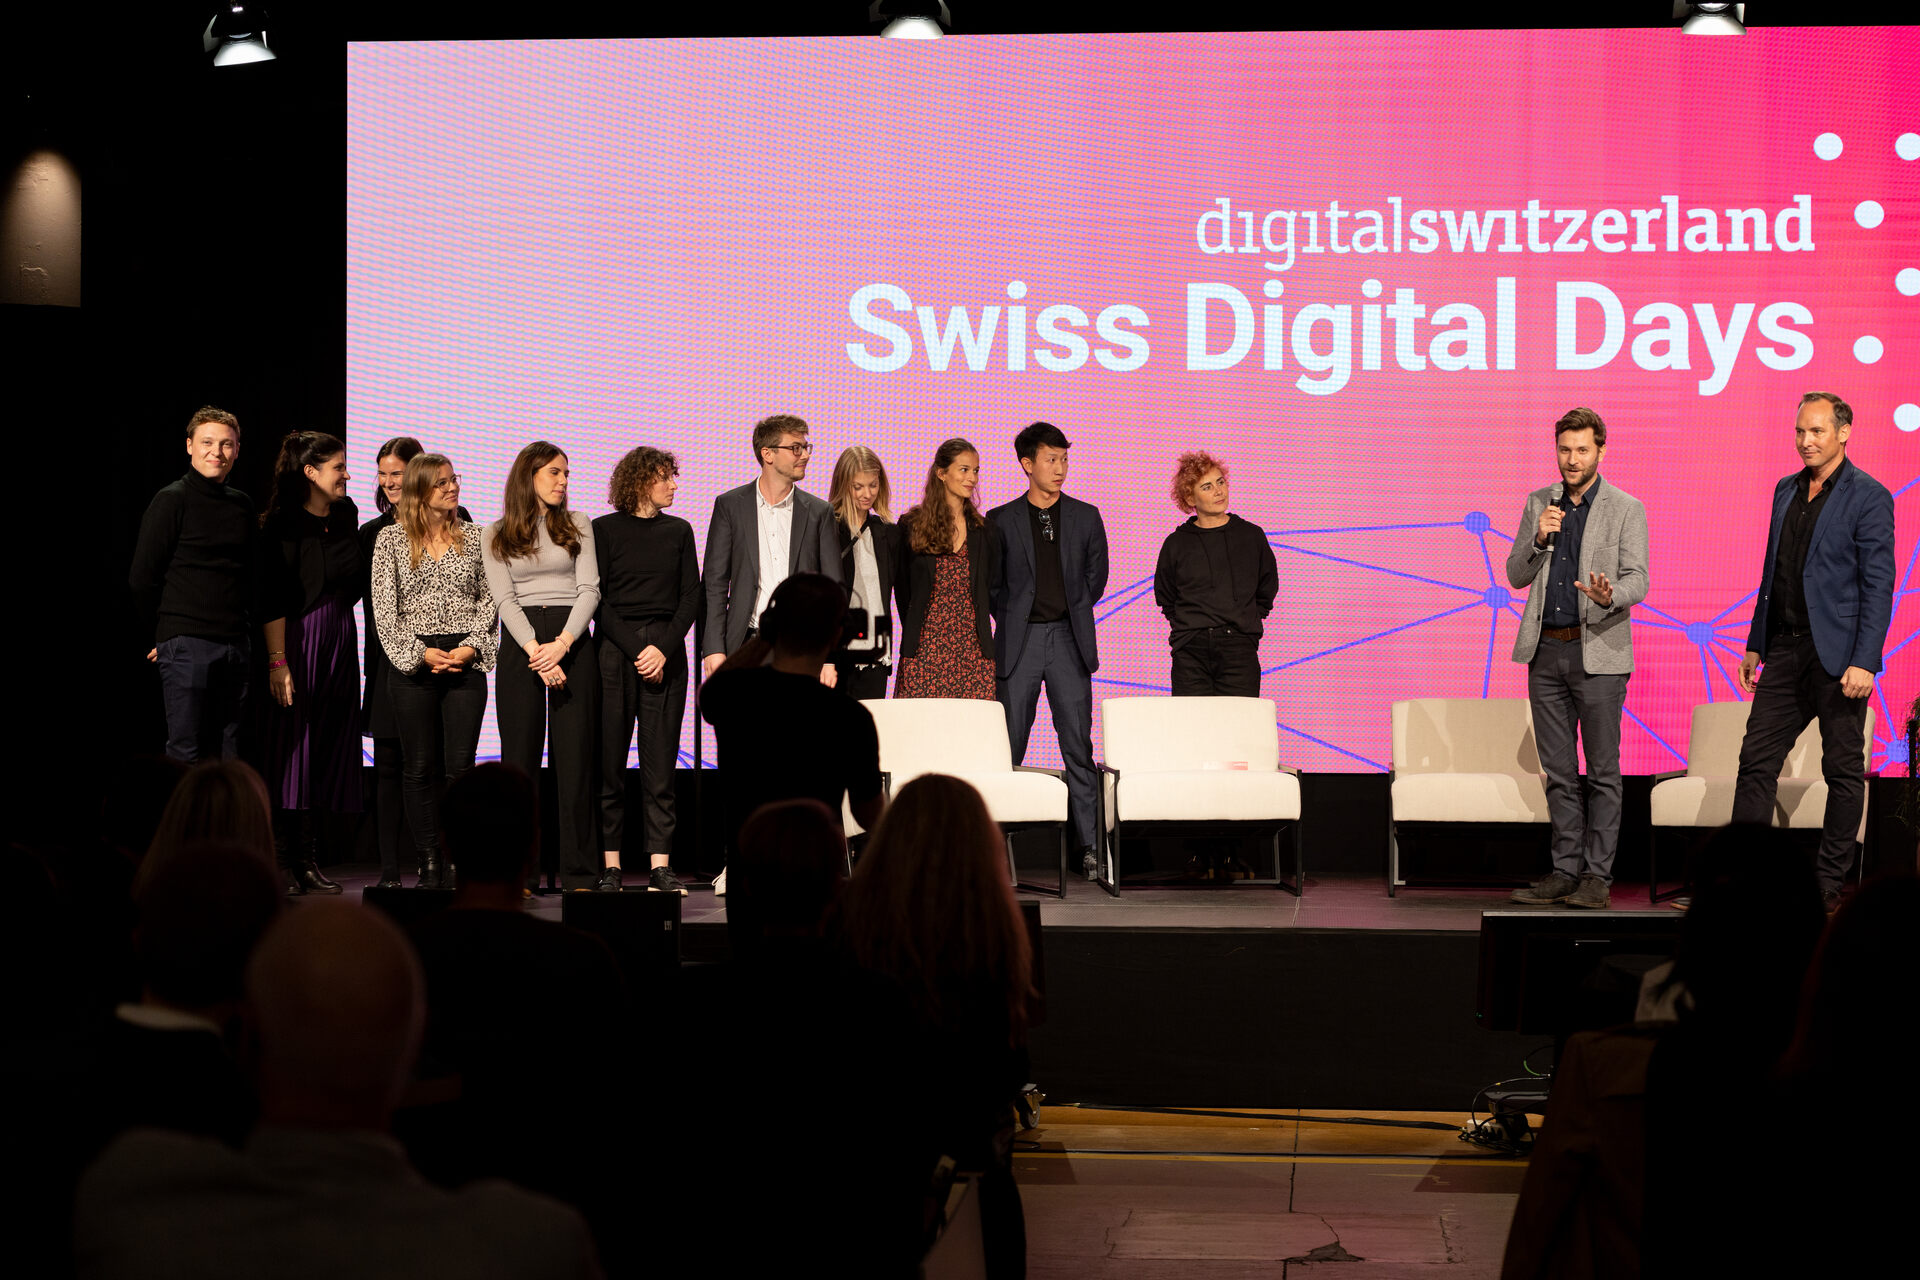 Giornate Digitali Svizzere: L’evento conclusivo delle “Giornate Digitali Svizzere” 2022 alla Freiruum di Zugo (Zugo) il 27 ottobre: l’équipe organizzativa di digitalswitzerland